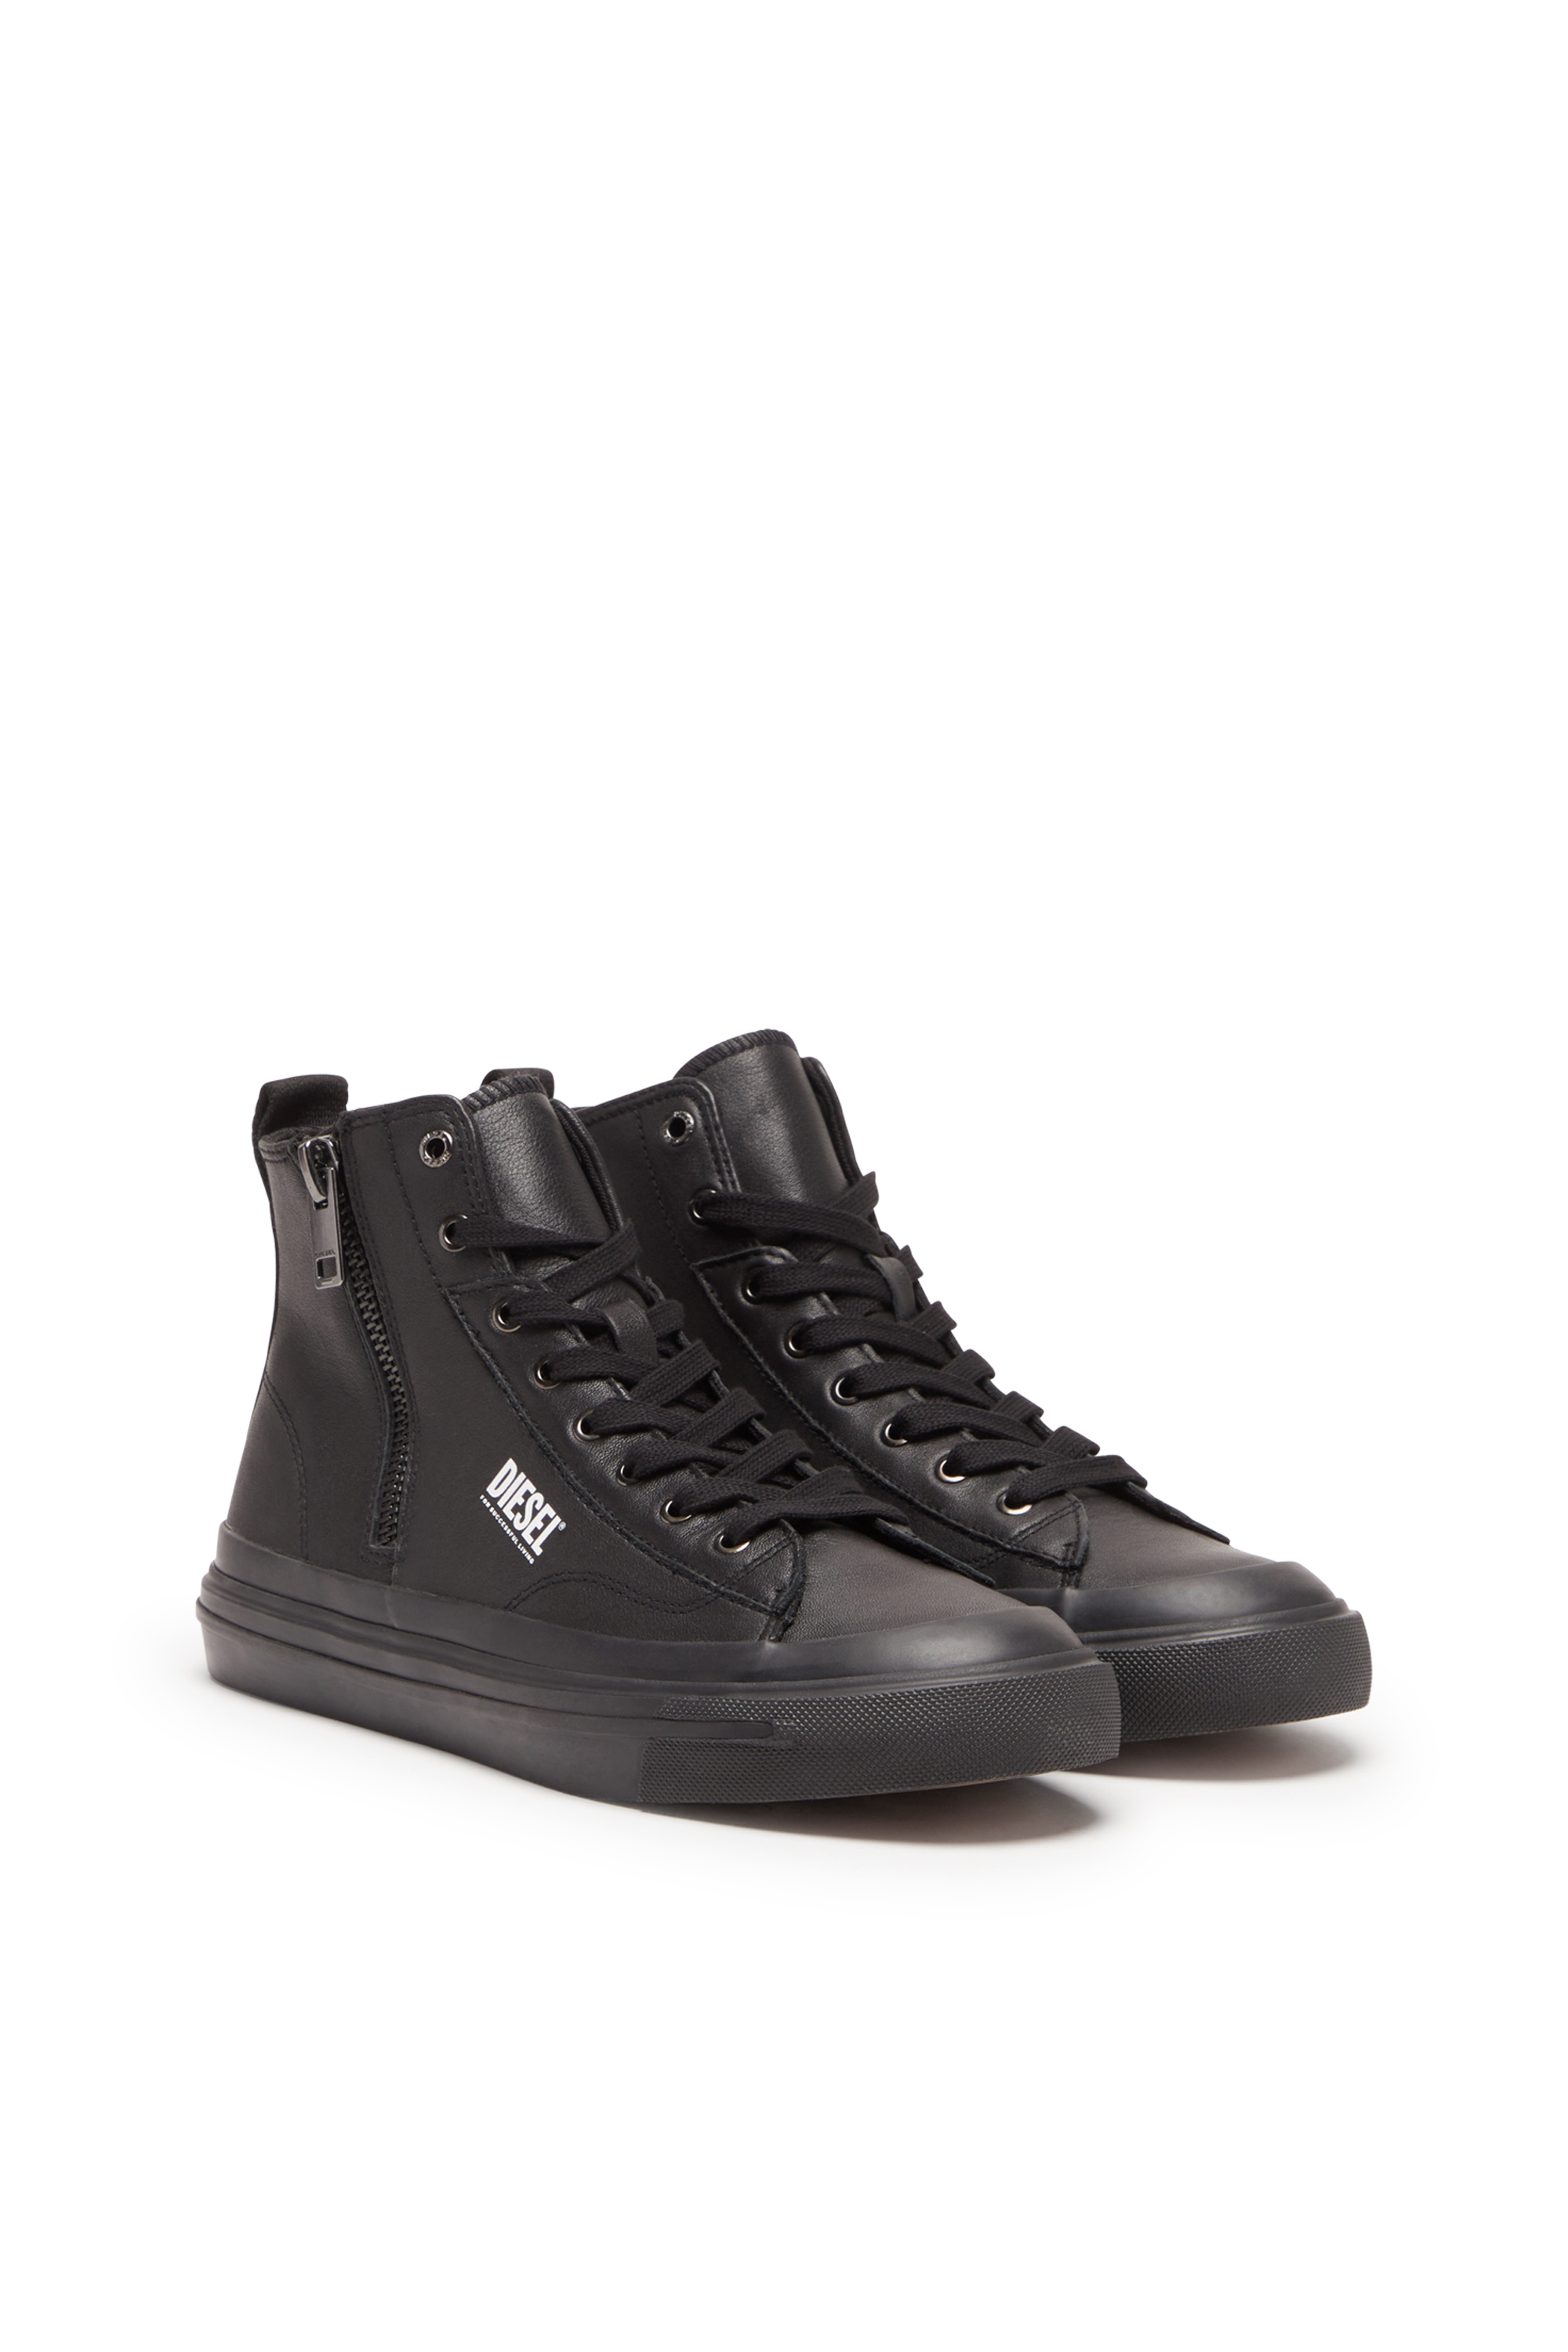 Diesel - S-ATHOS DV MID, Man S-Athos Dv Mid - High-top sneakers with side zip in Black - Image 2